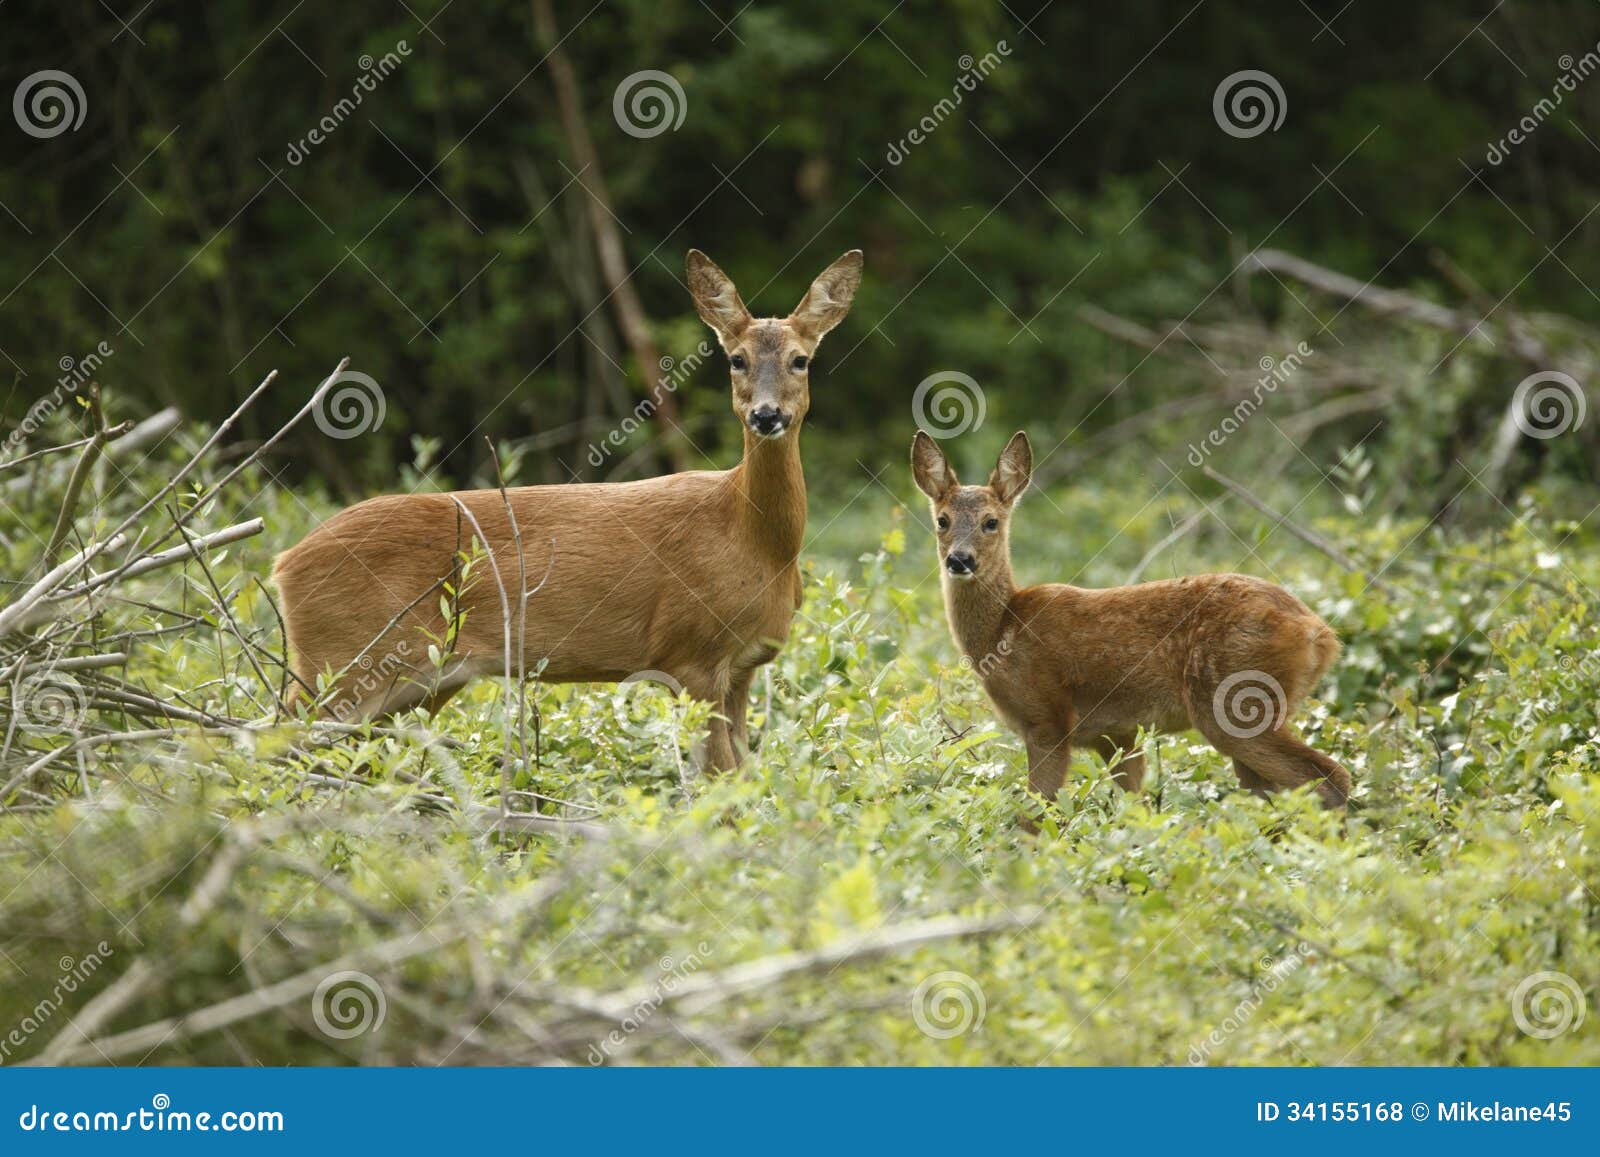 roe deer, capreolus capreolus